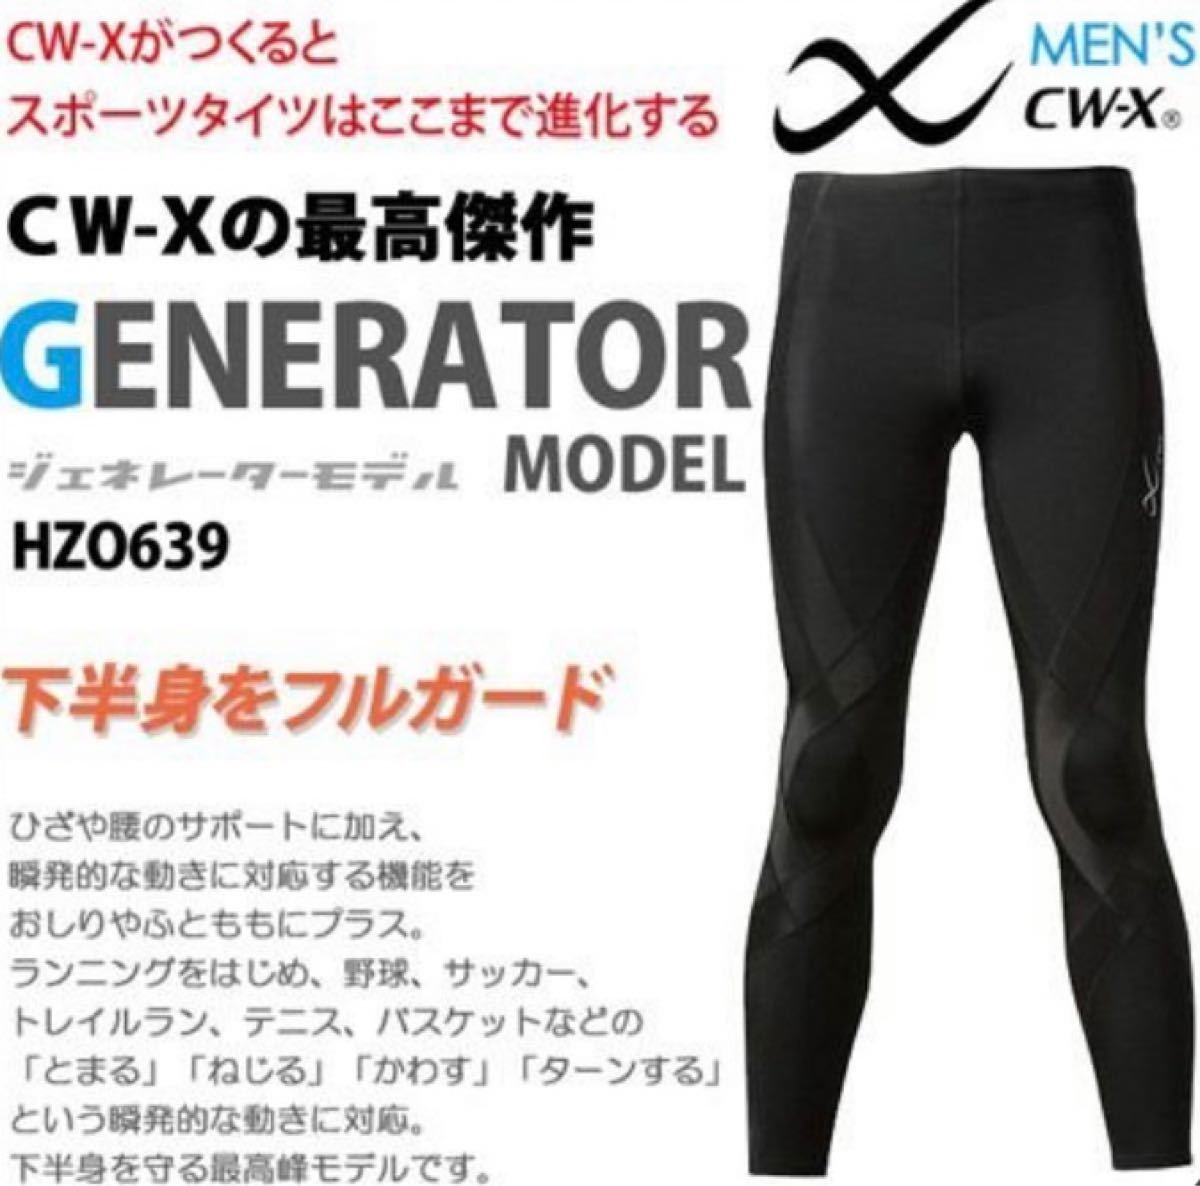 3000円 【新品本物】 CW-X レディース スポーツタイツ ジェネレーターモデル ブラック L P